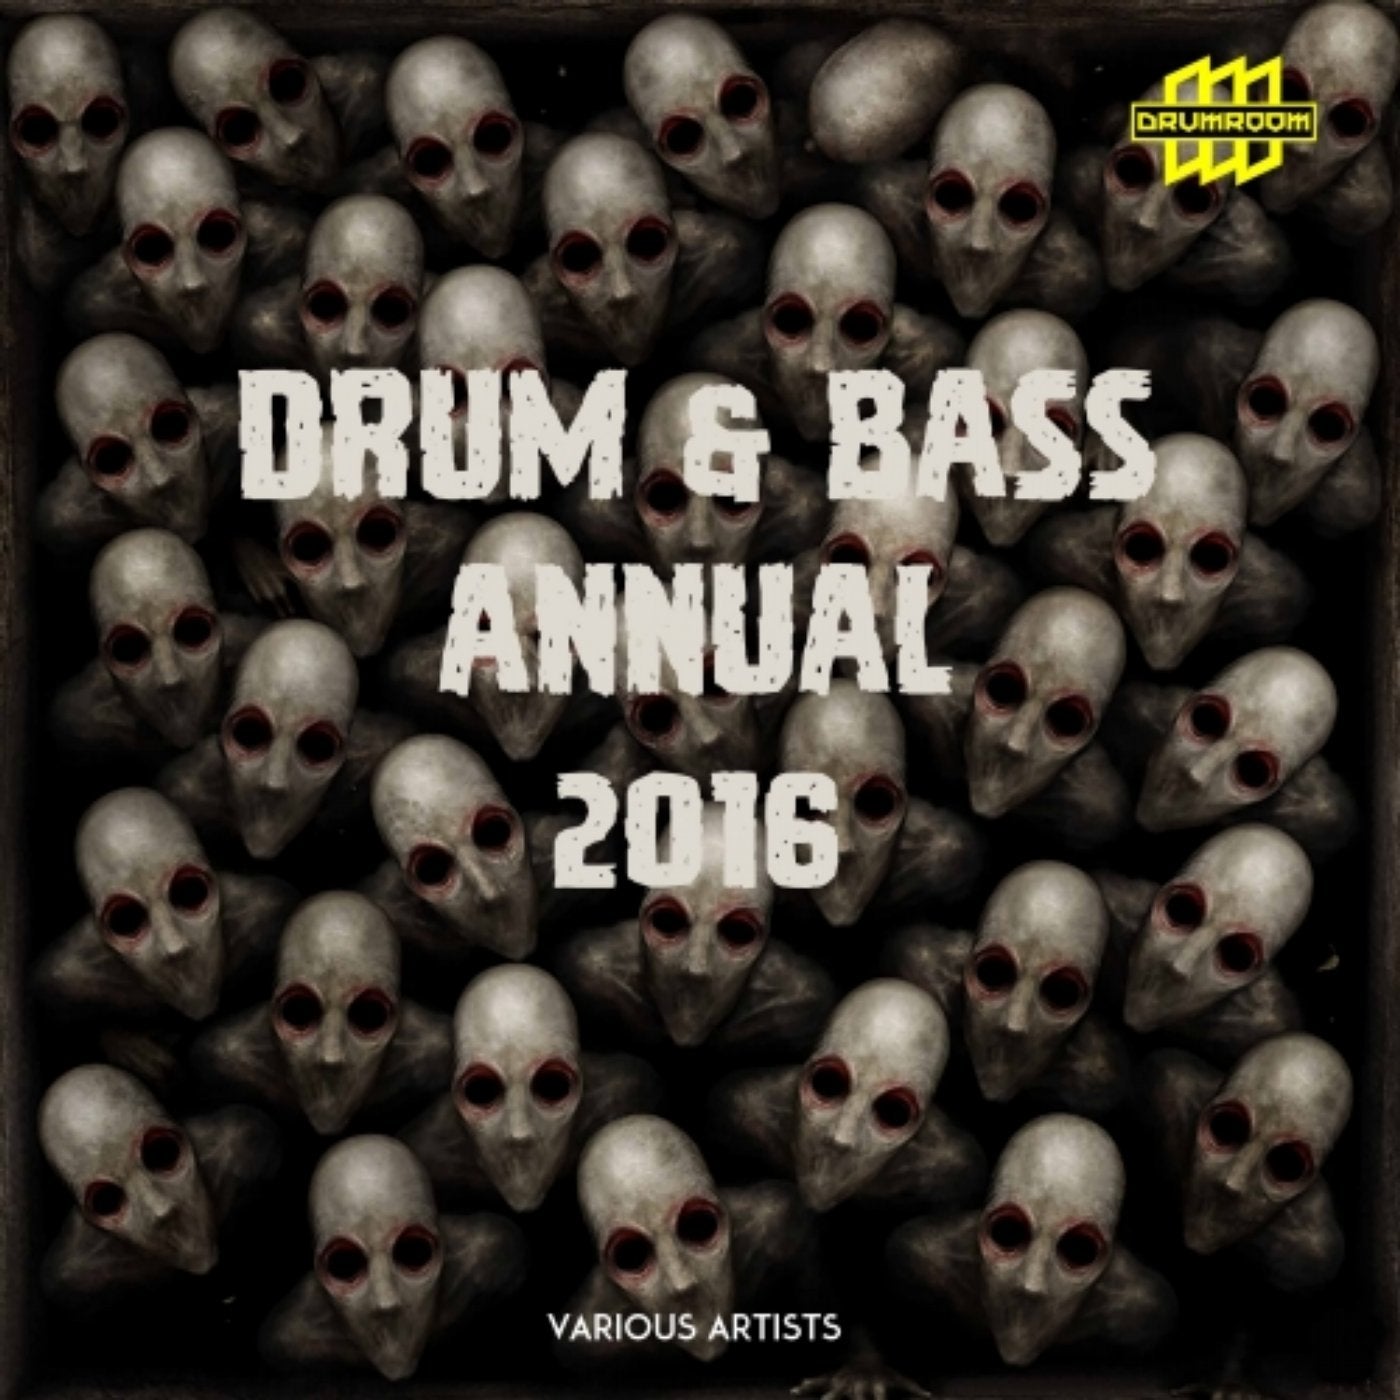 Drum & Bass Annual 2016